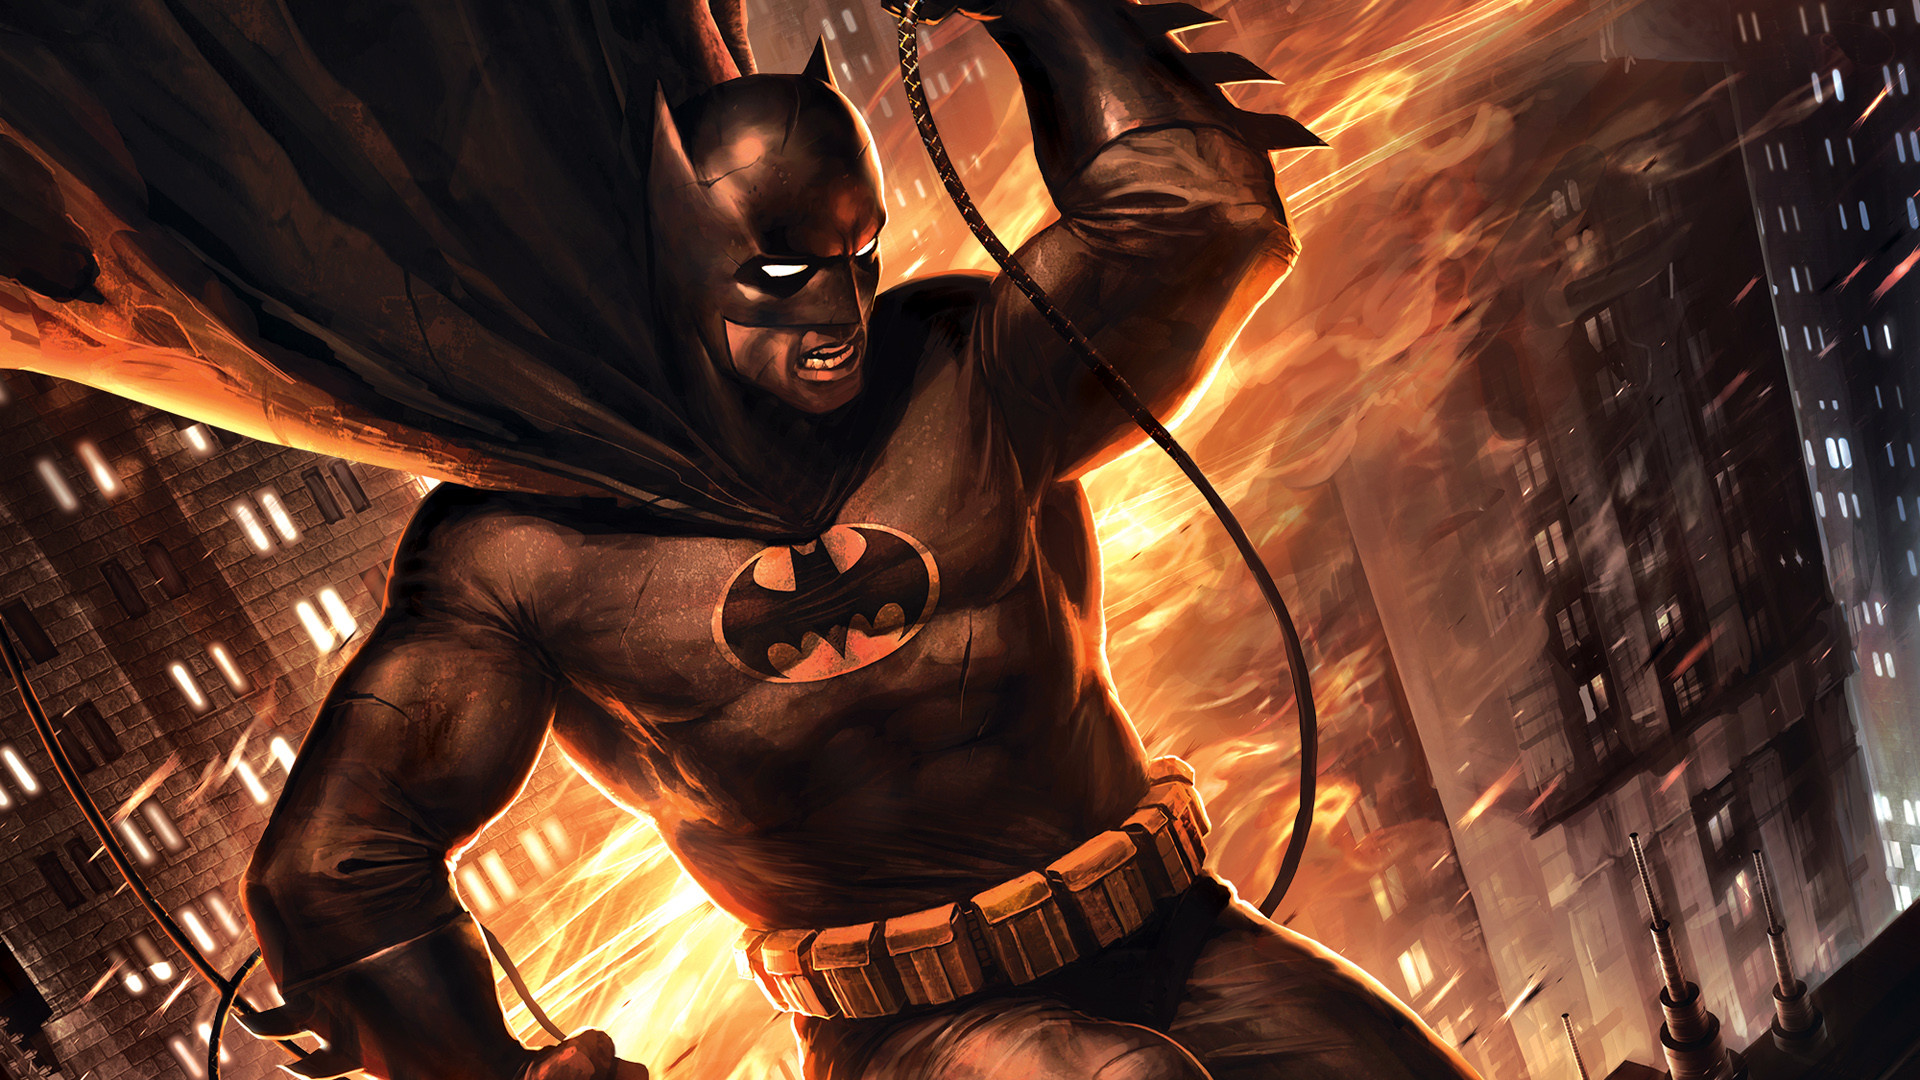 1 Batman The Dark Knight Returns, Part 2 HD Wallpapers Backgrounds – Wallpaper Abyss